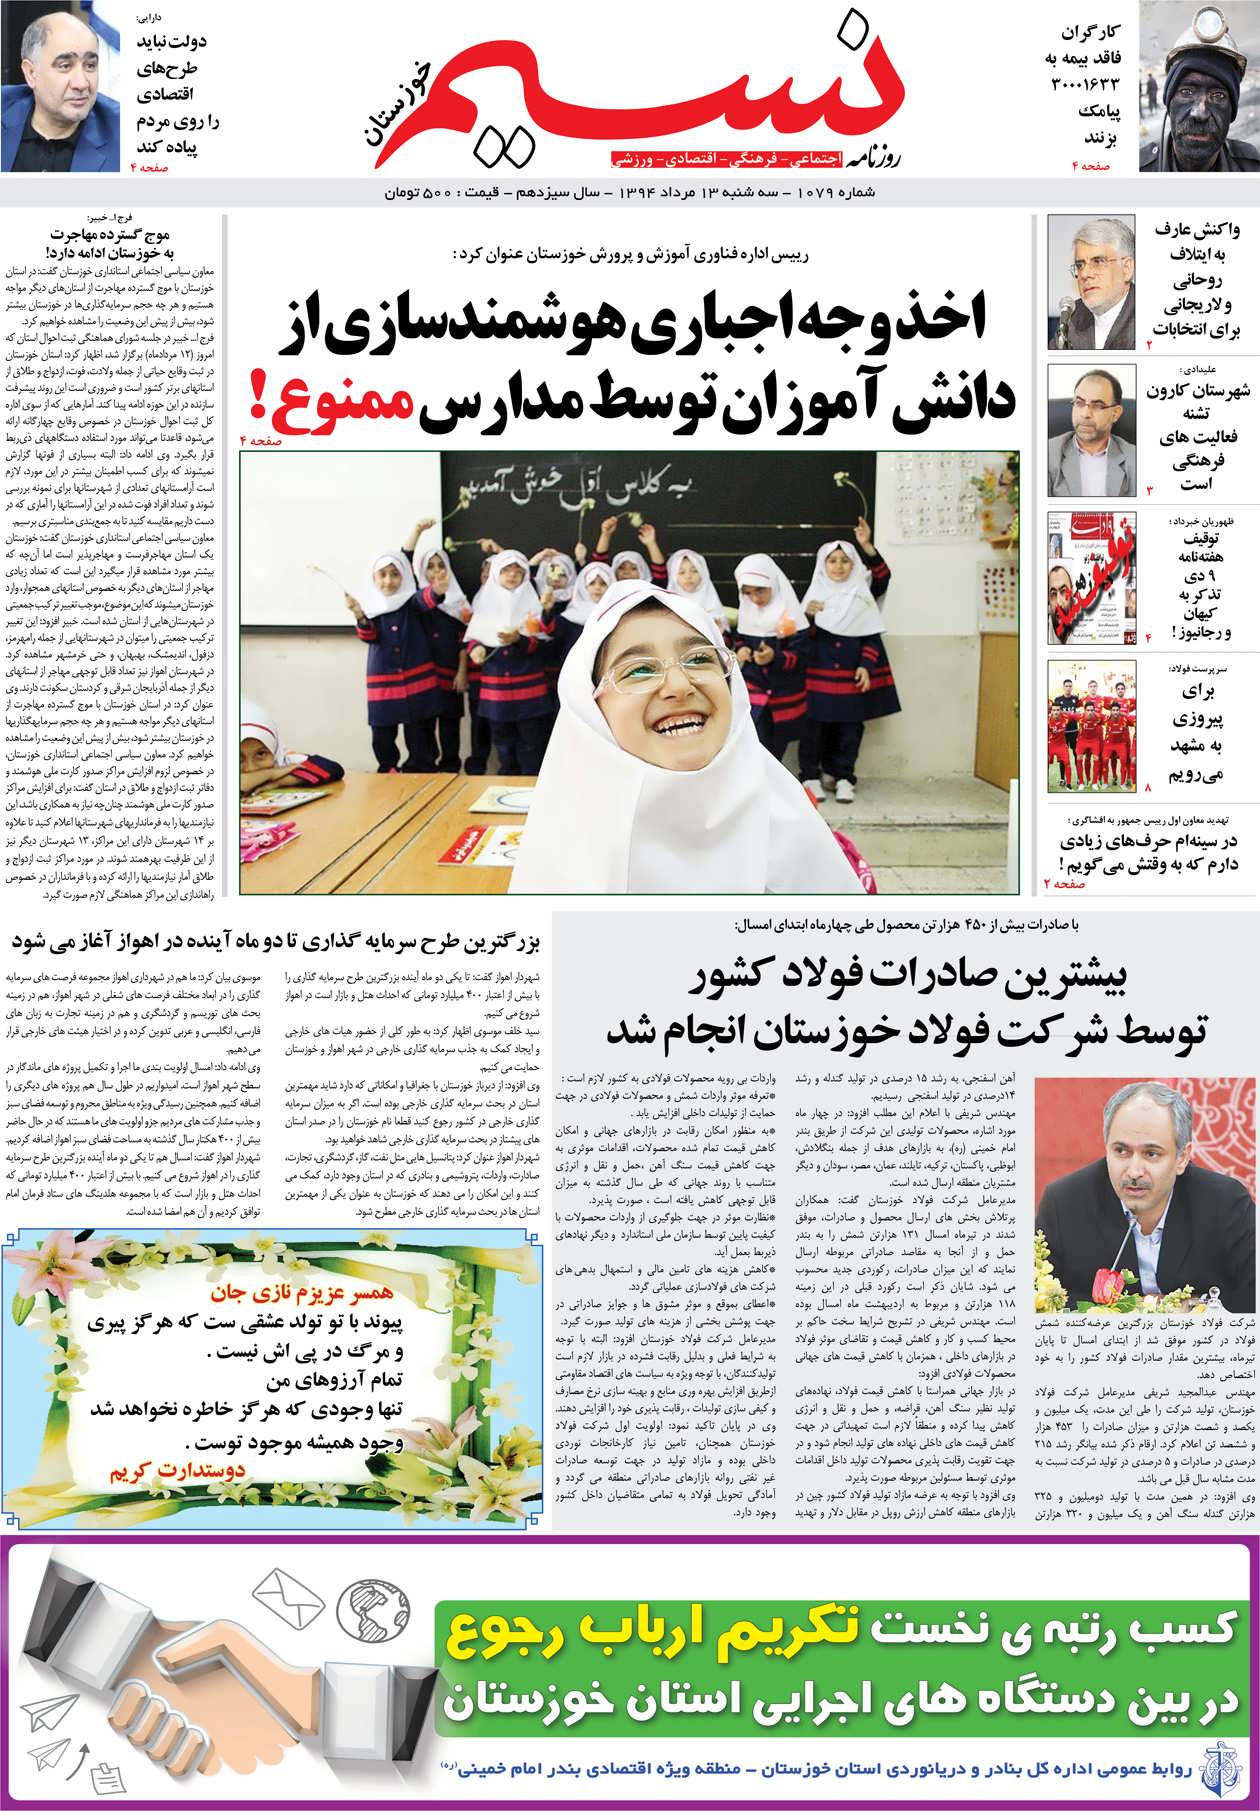 صفحه اصلی روزنامه نسیم شماره 1079